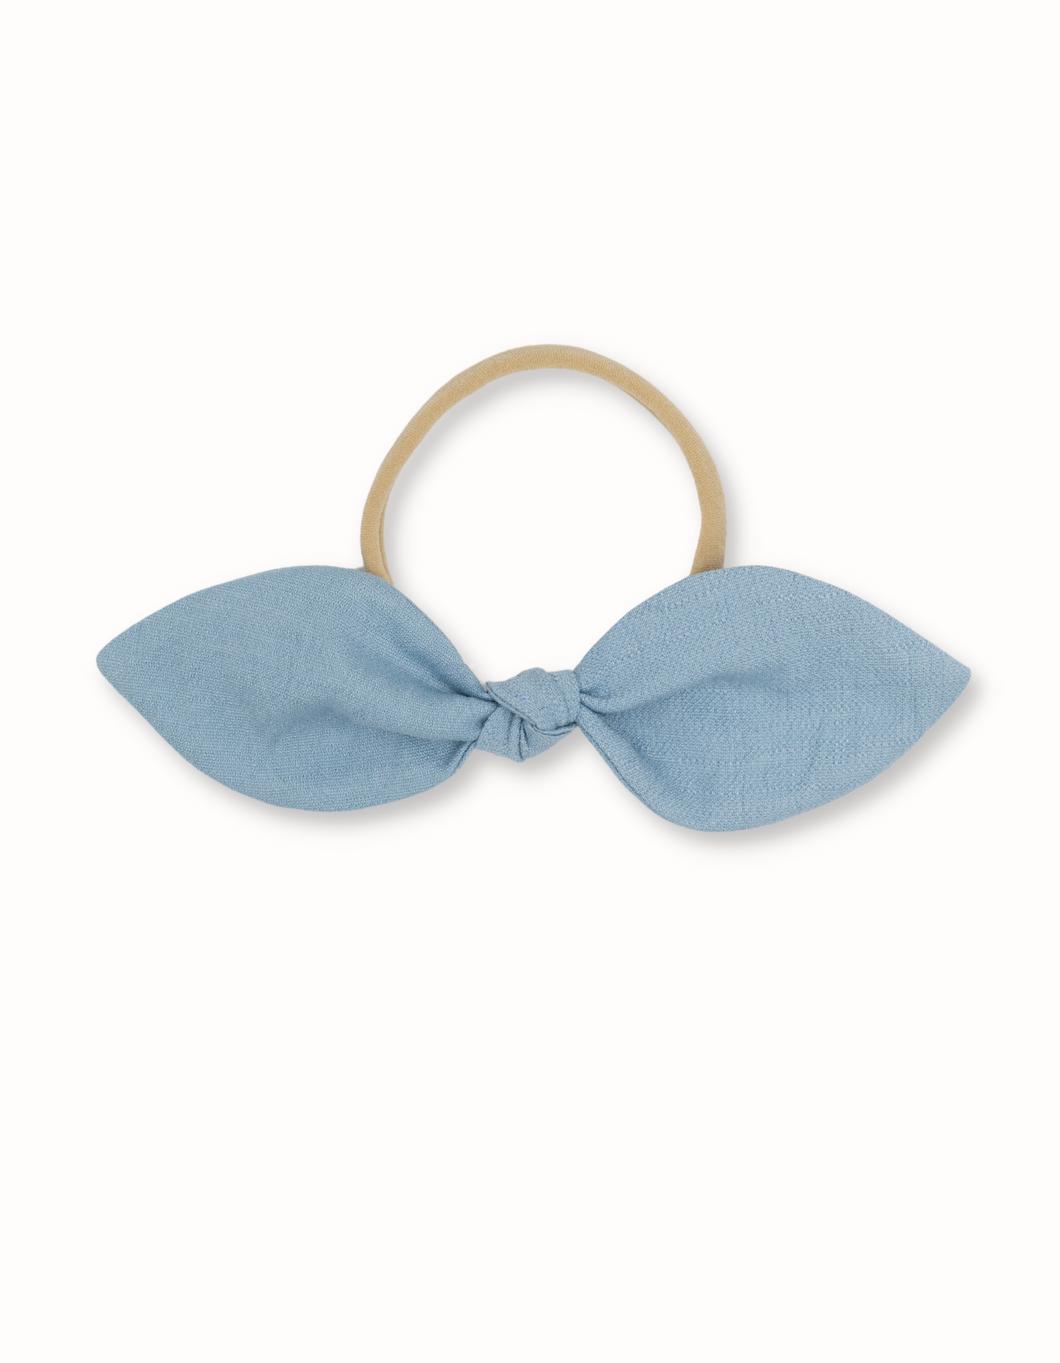 Marina baby bow headband Livy Lou Collection